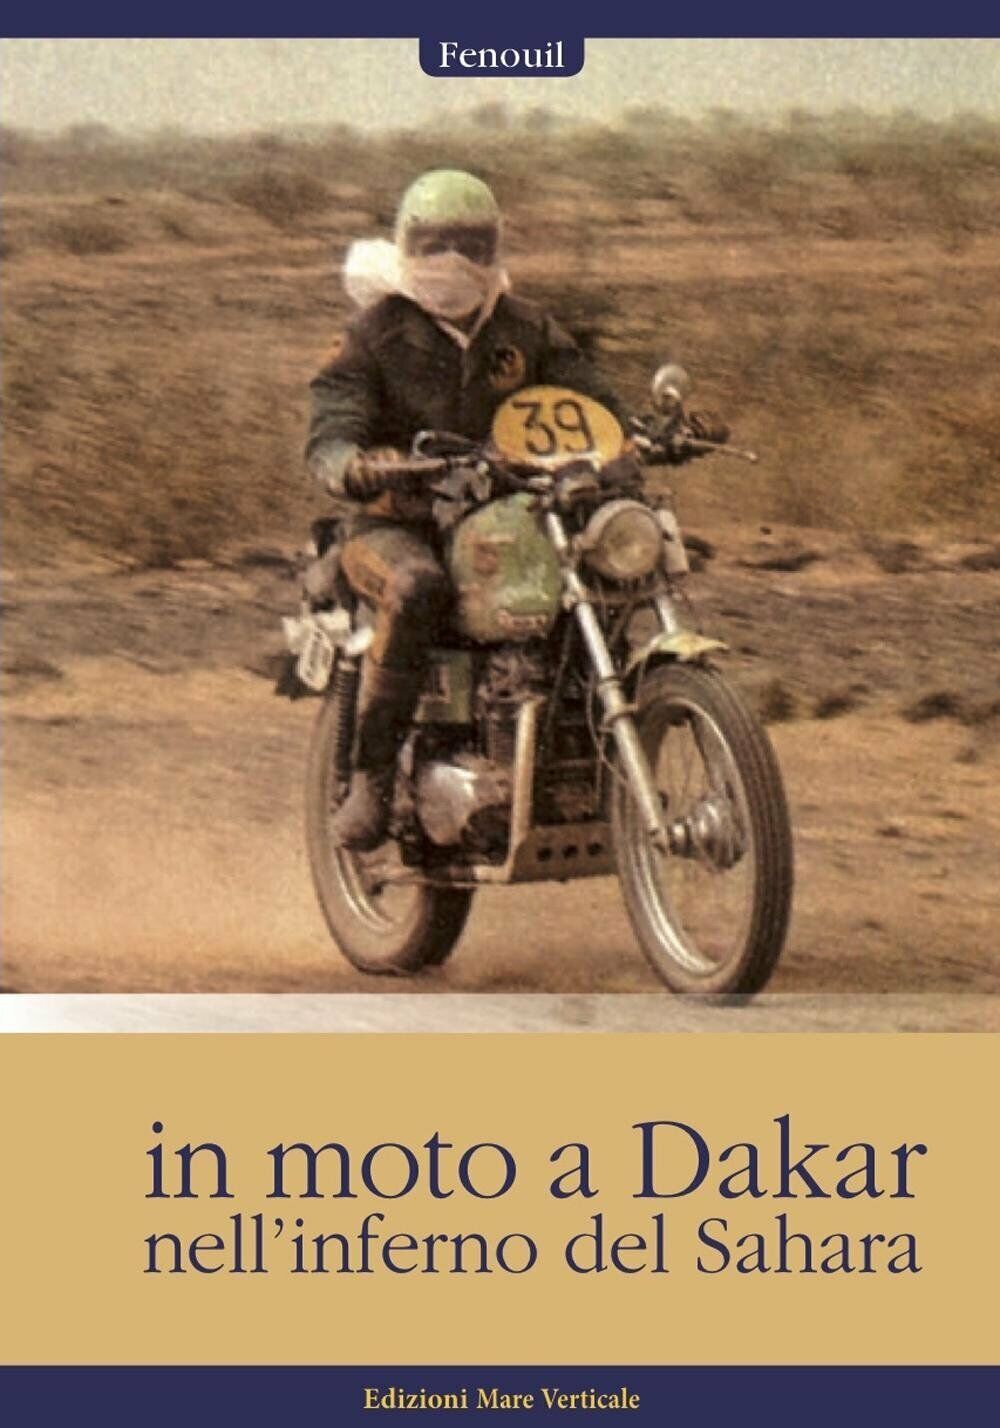 In moto a Dakar nell'inferno del Sahara - Fenouil - mare Verticale, 2016 libro usato